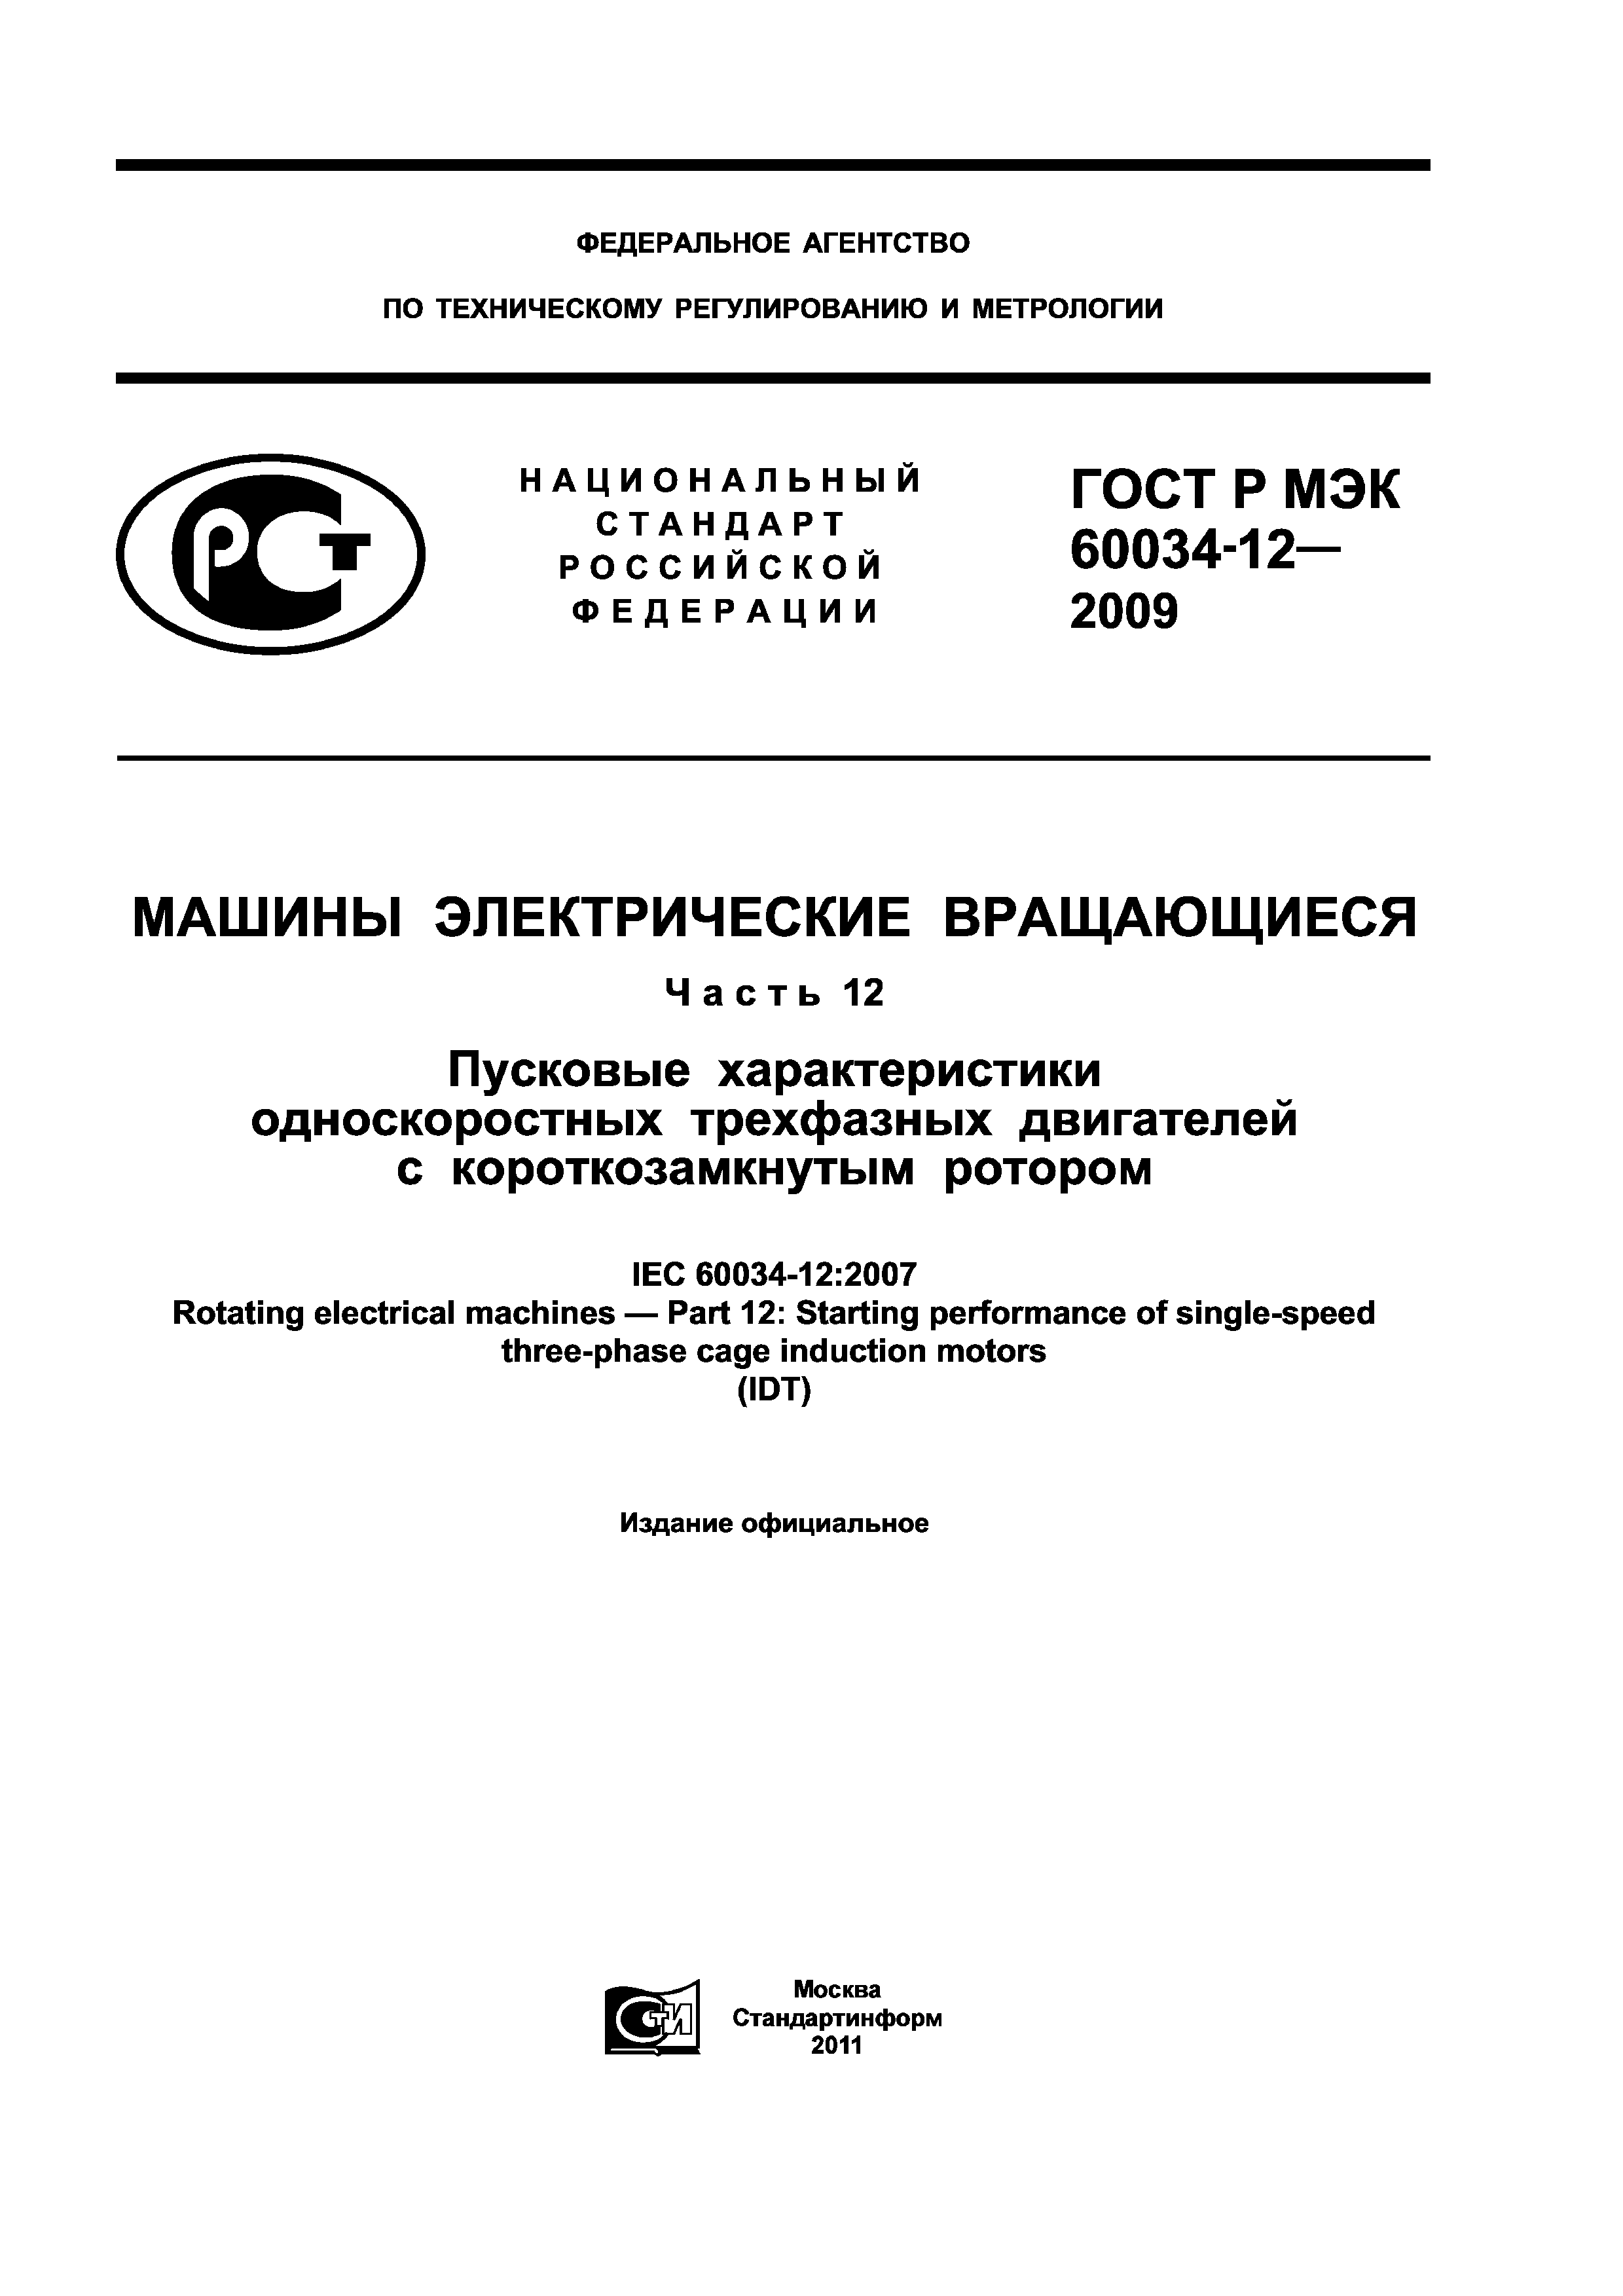 ГОСТ Р МЭК 60034-12-2009